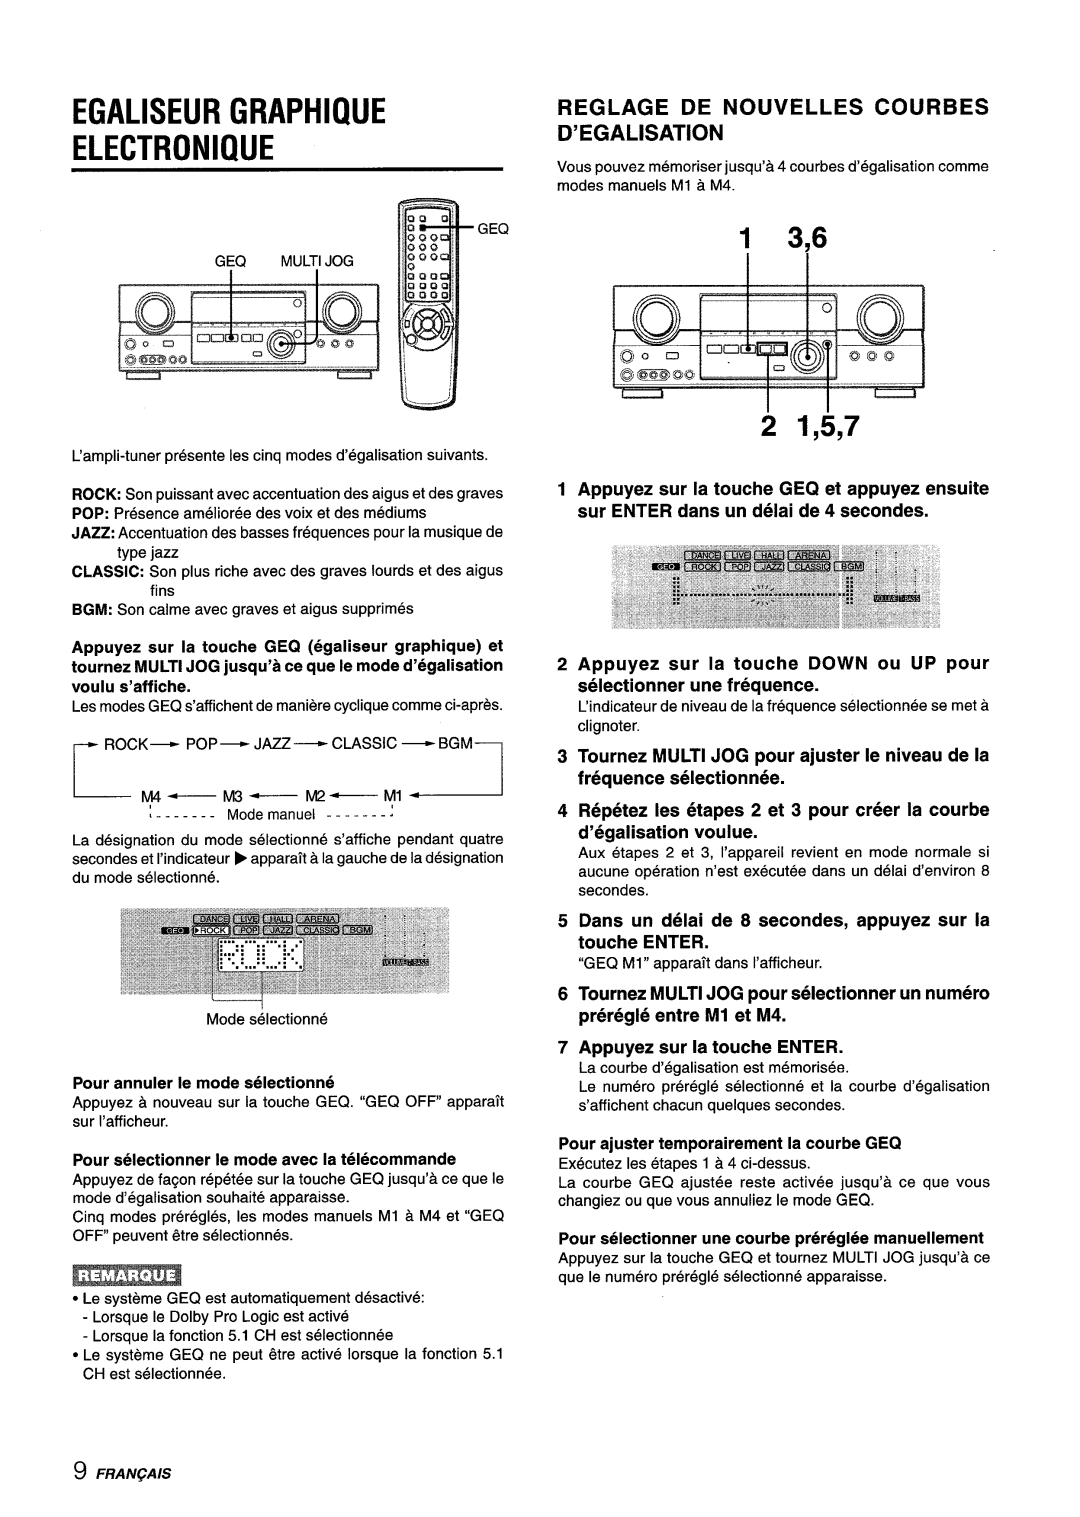 Aiwa AV-D35 manual L- y4, Egaliseur Graphique Electronique, 2 1,5,7, Reglage De Nouvelles Courbes D’Egalisation 